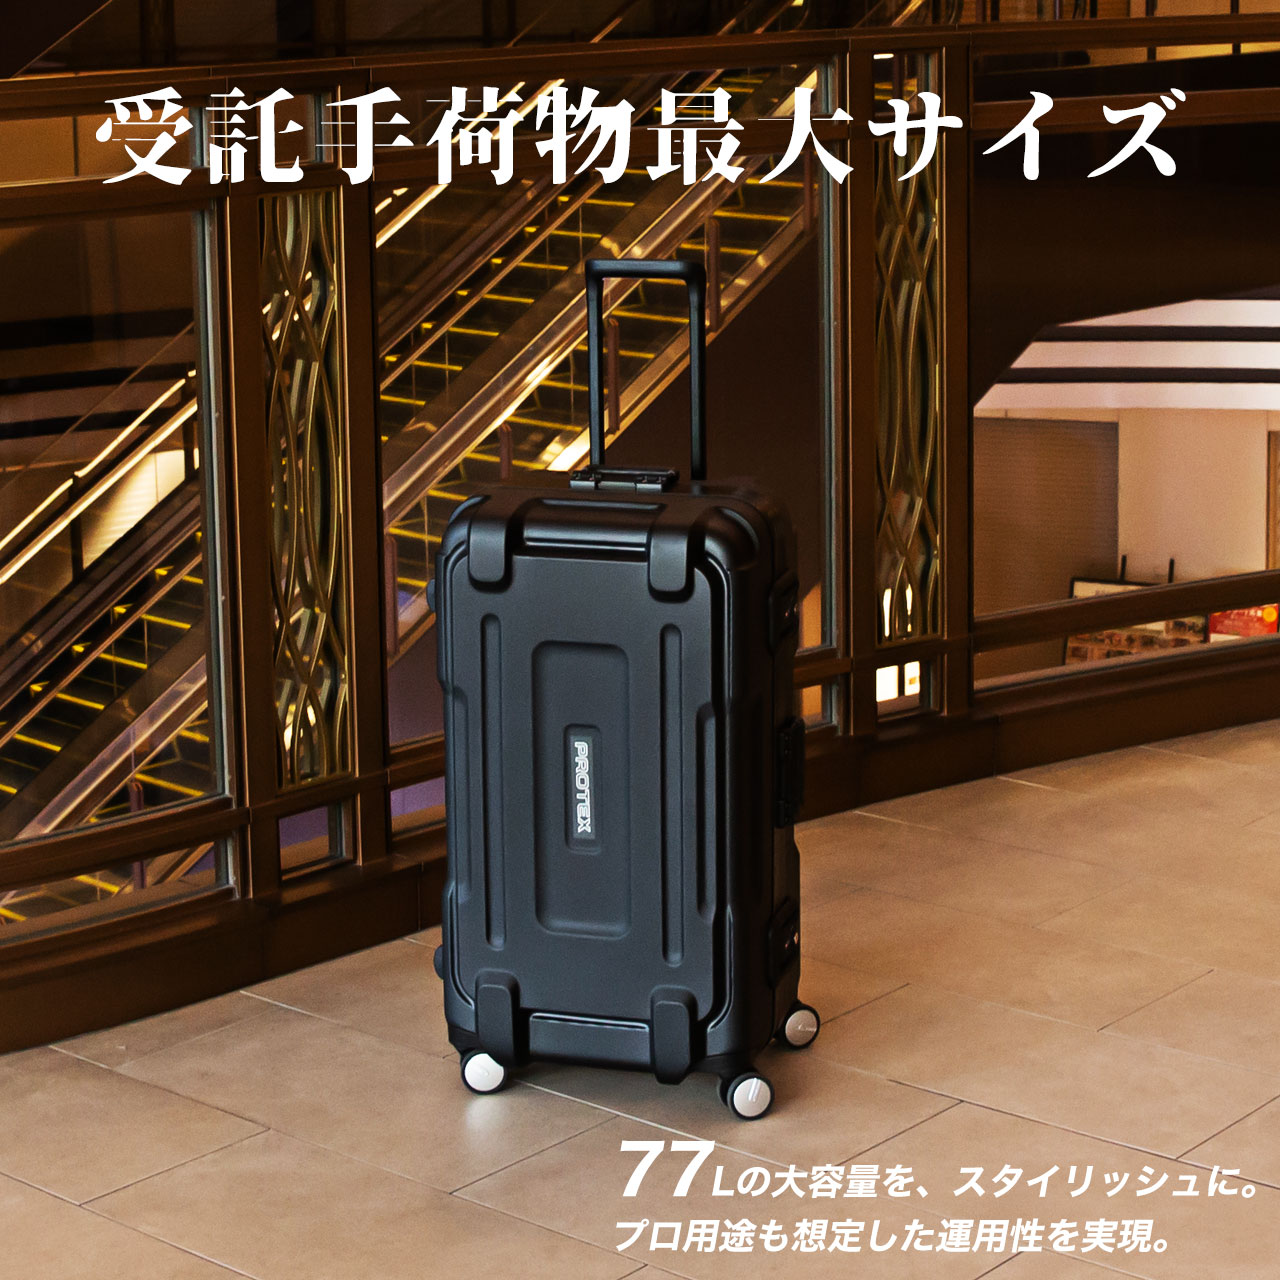 海外旅行におすすめスーツケースは、プロテックスのFPV-08